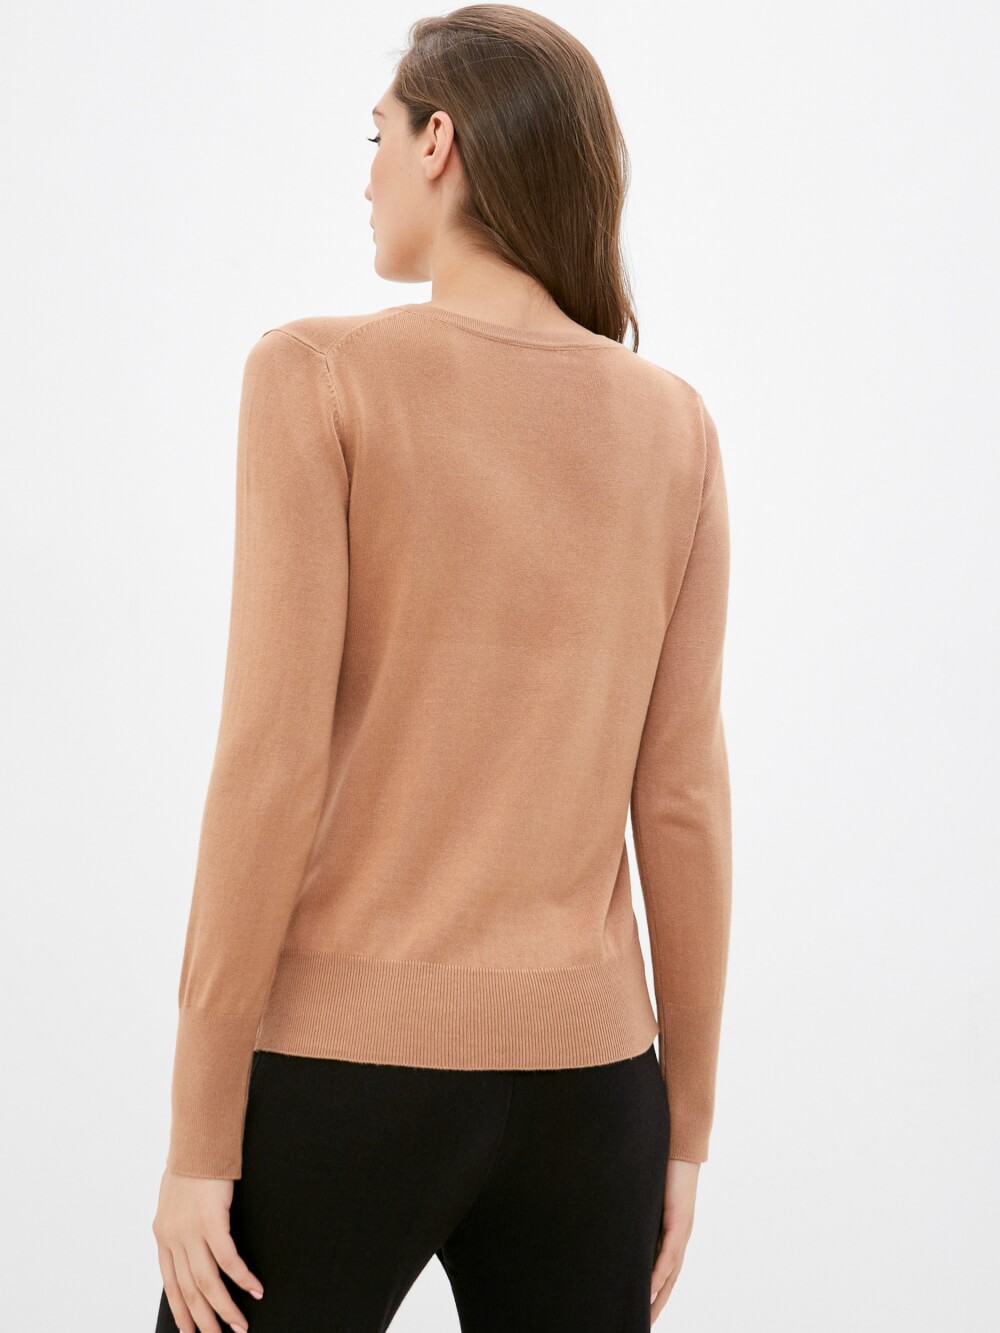 Пуловер женский Incity 1.1.2.21.01.05.01965/171330 коричневый XS